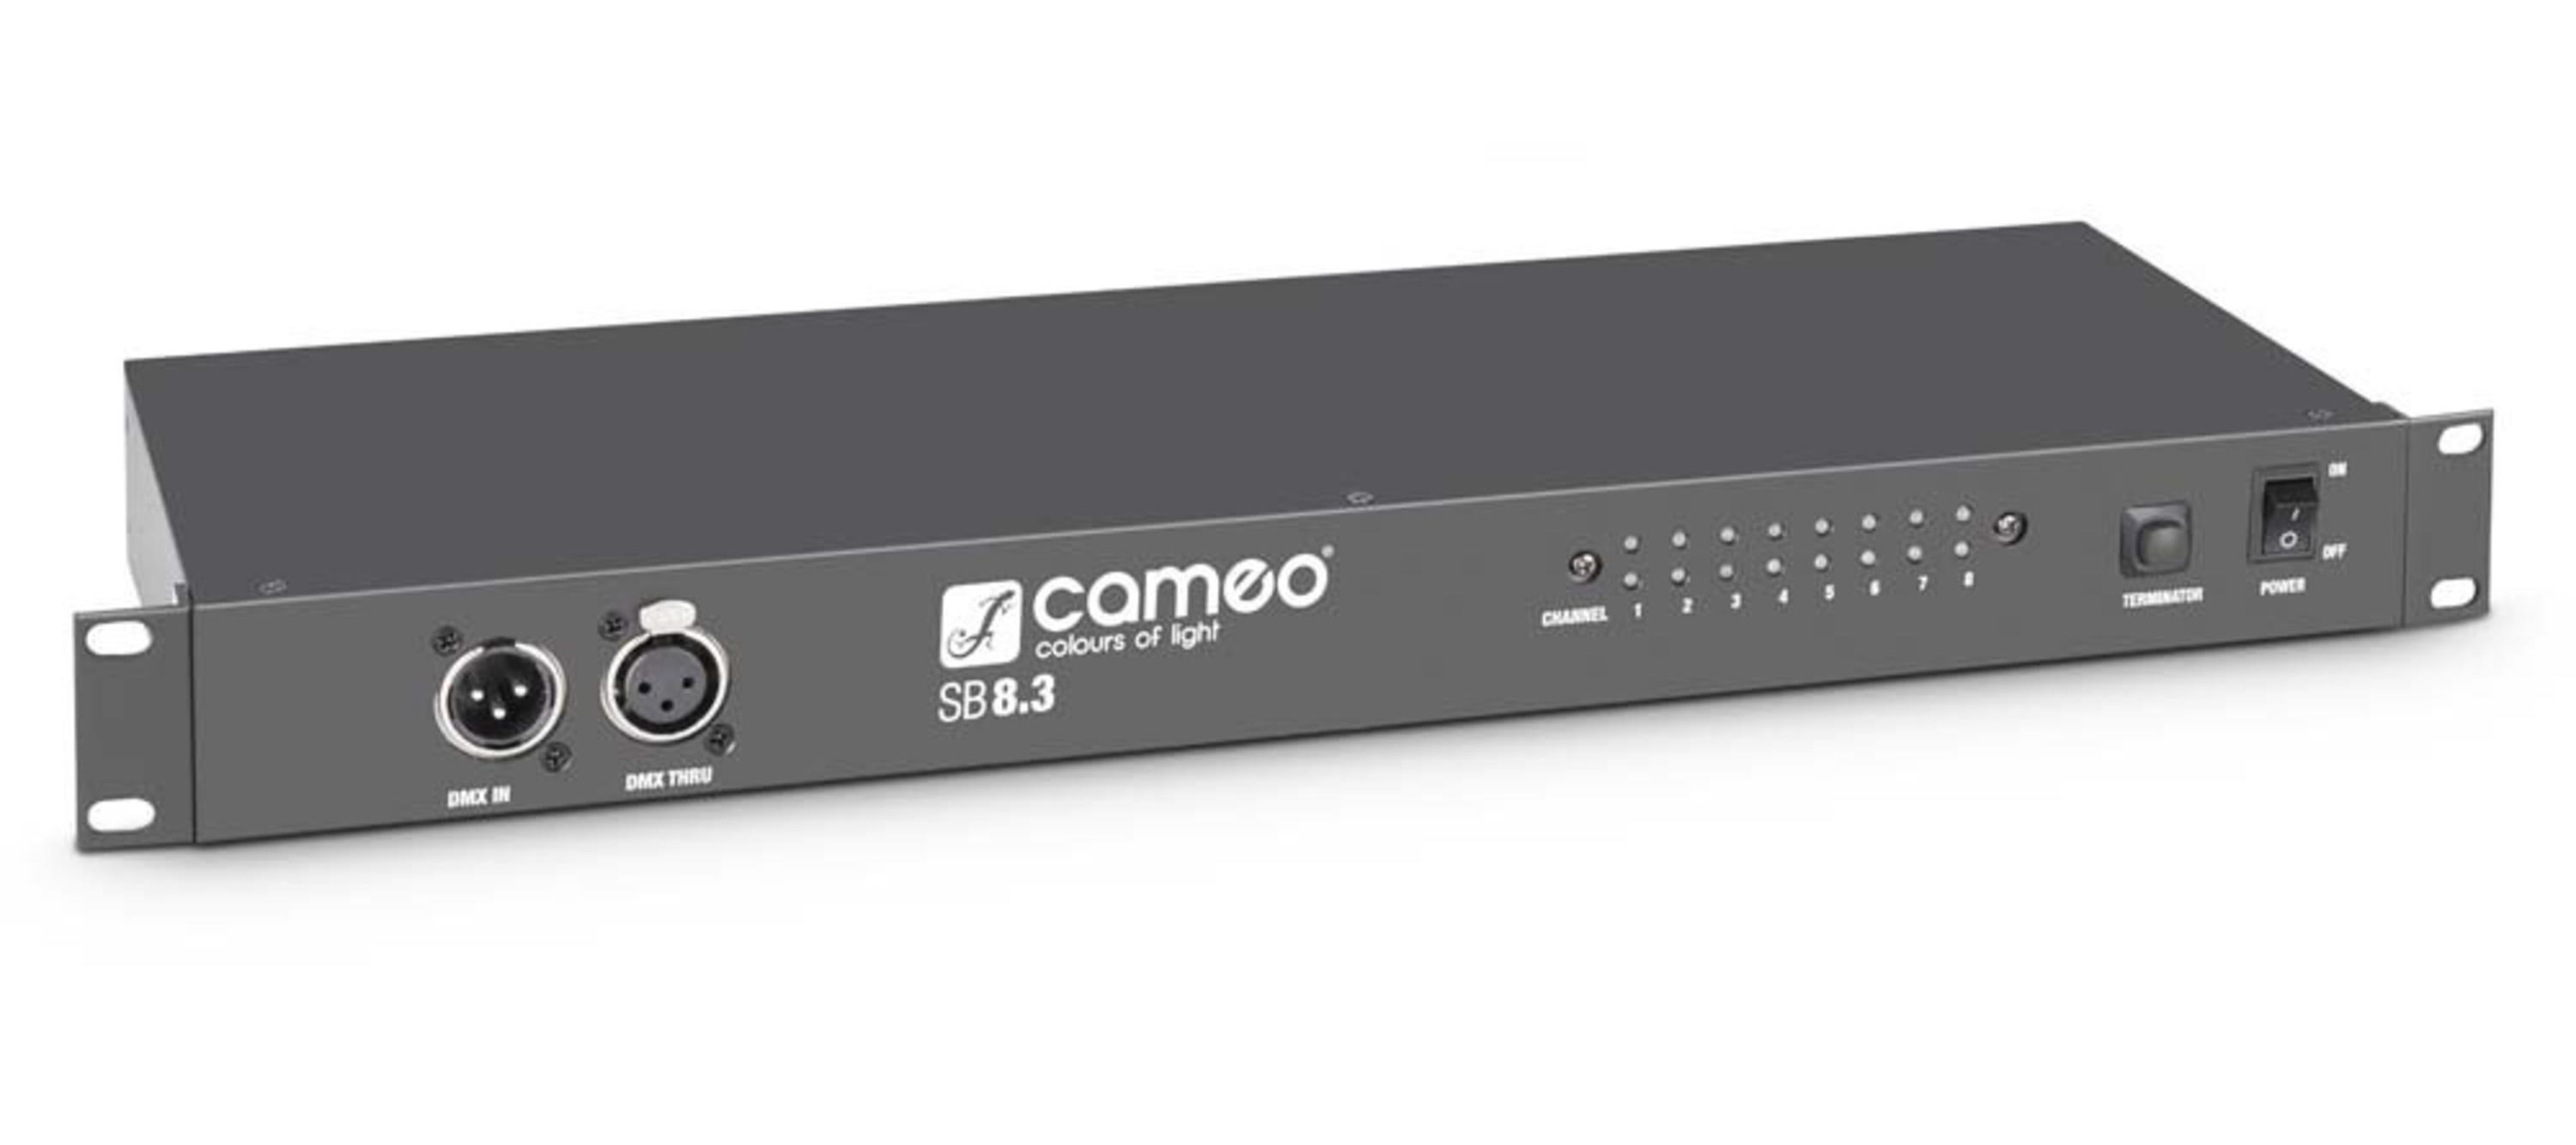 Сплиттеры и приборы обработки и распределения сигнала Cameo SB8.3